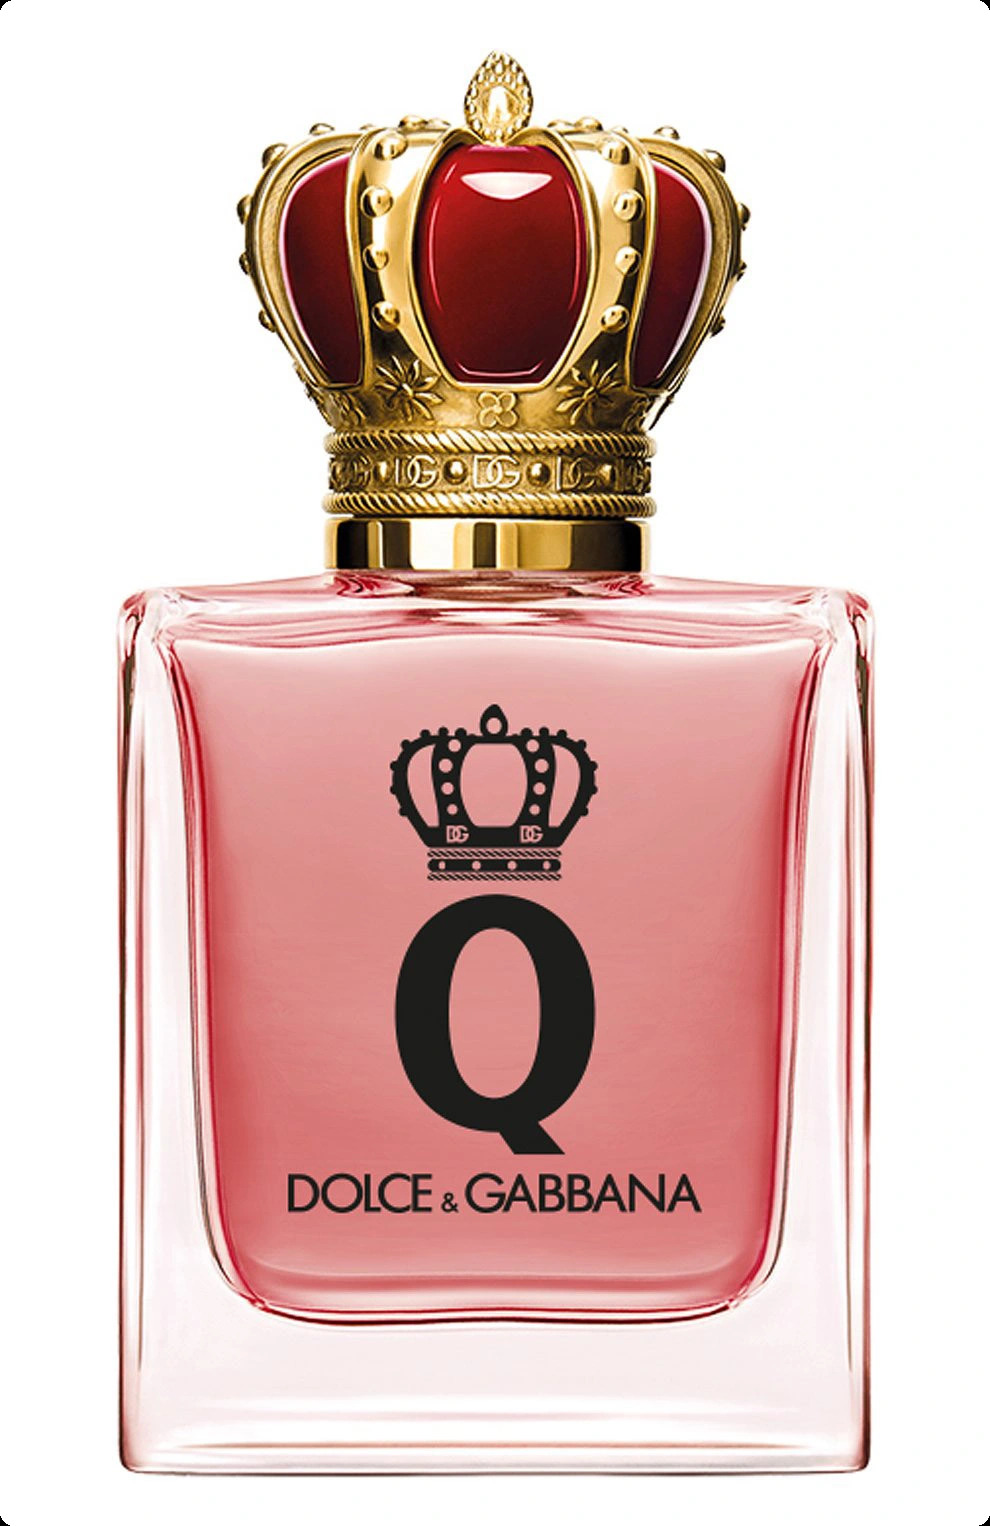 Dolce & Gabbana Q by Dolce Gabbana Парфюмерная вода (уценка) 50 мл для женщин